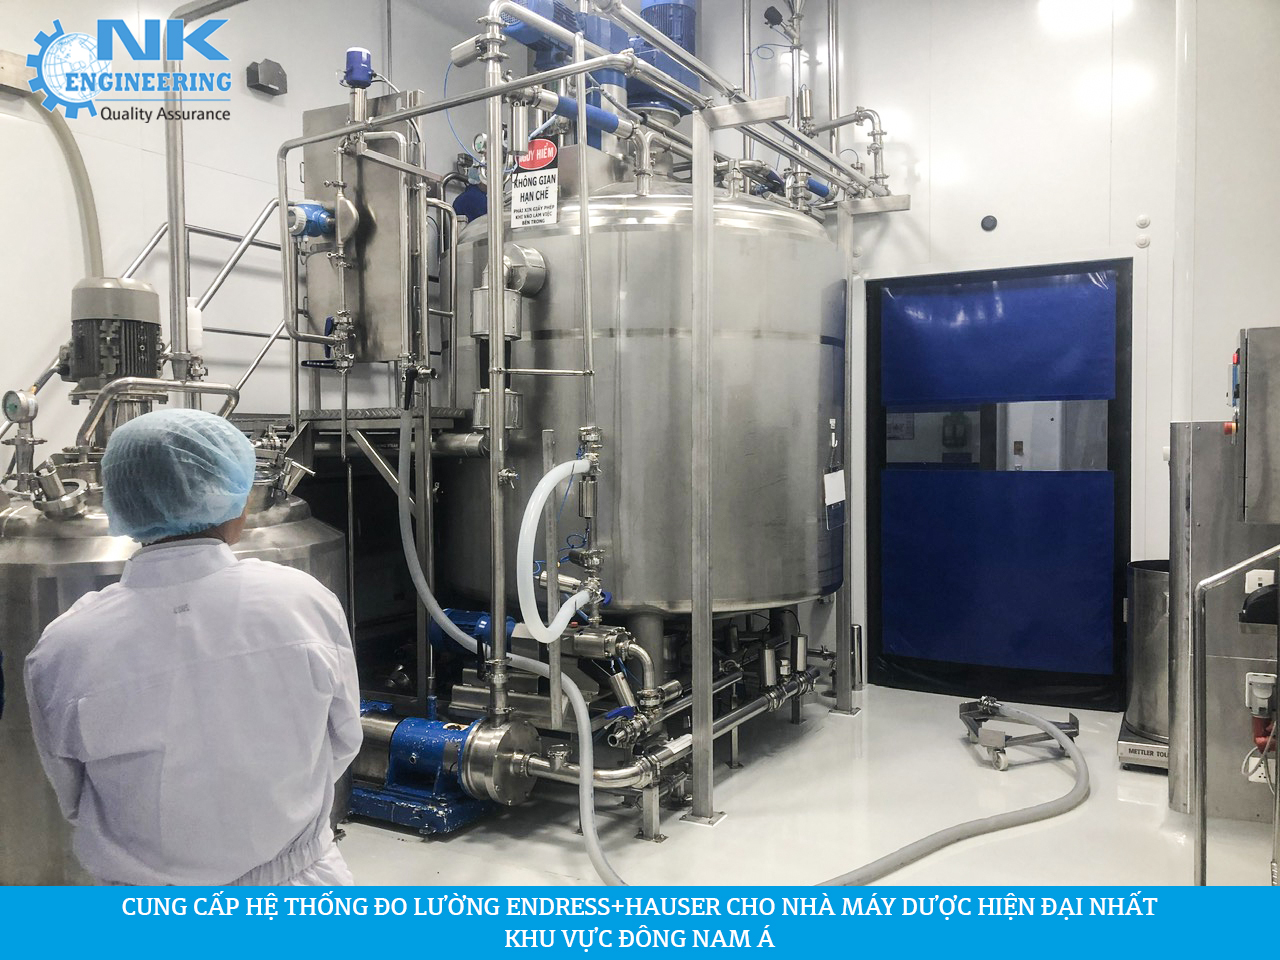 NK Engineering cung cấp thiết bị đo lường cho nhà máy dược hiện đại nhất khu vực Đông Nam Á